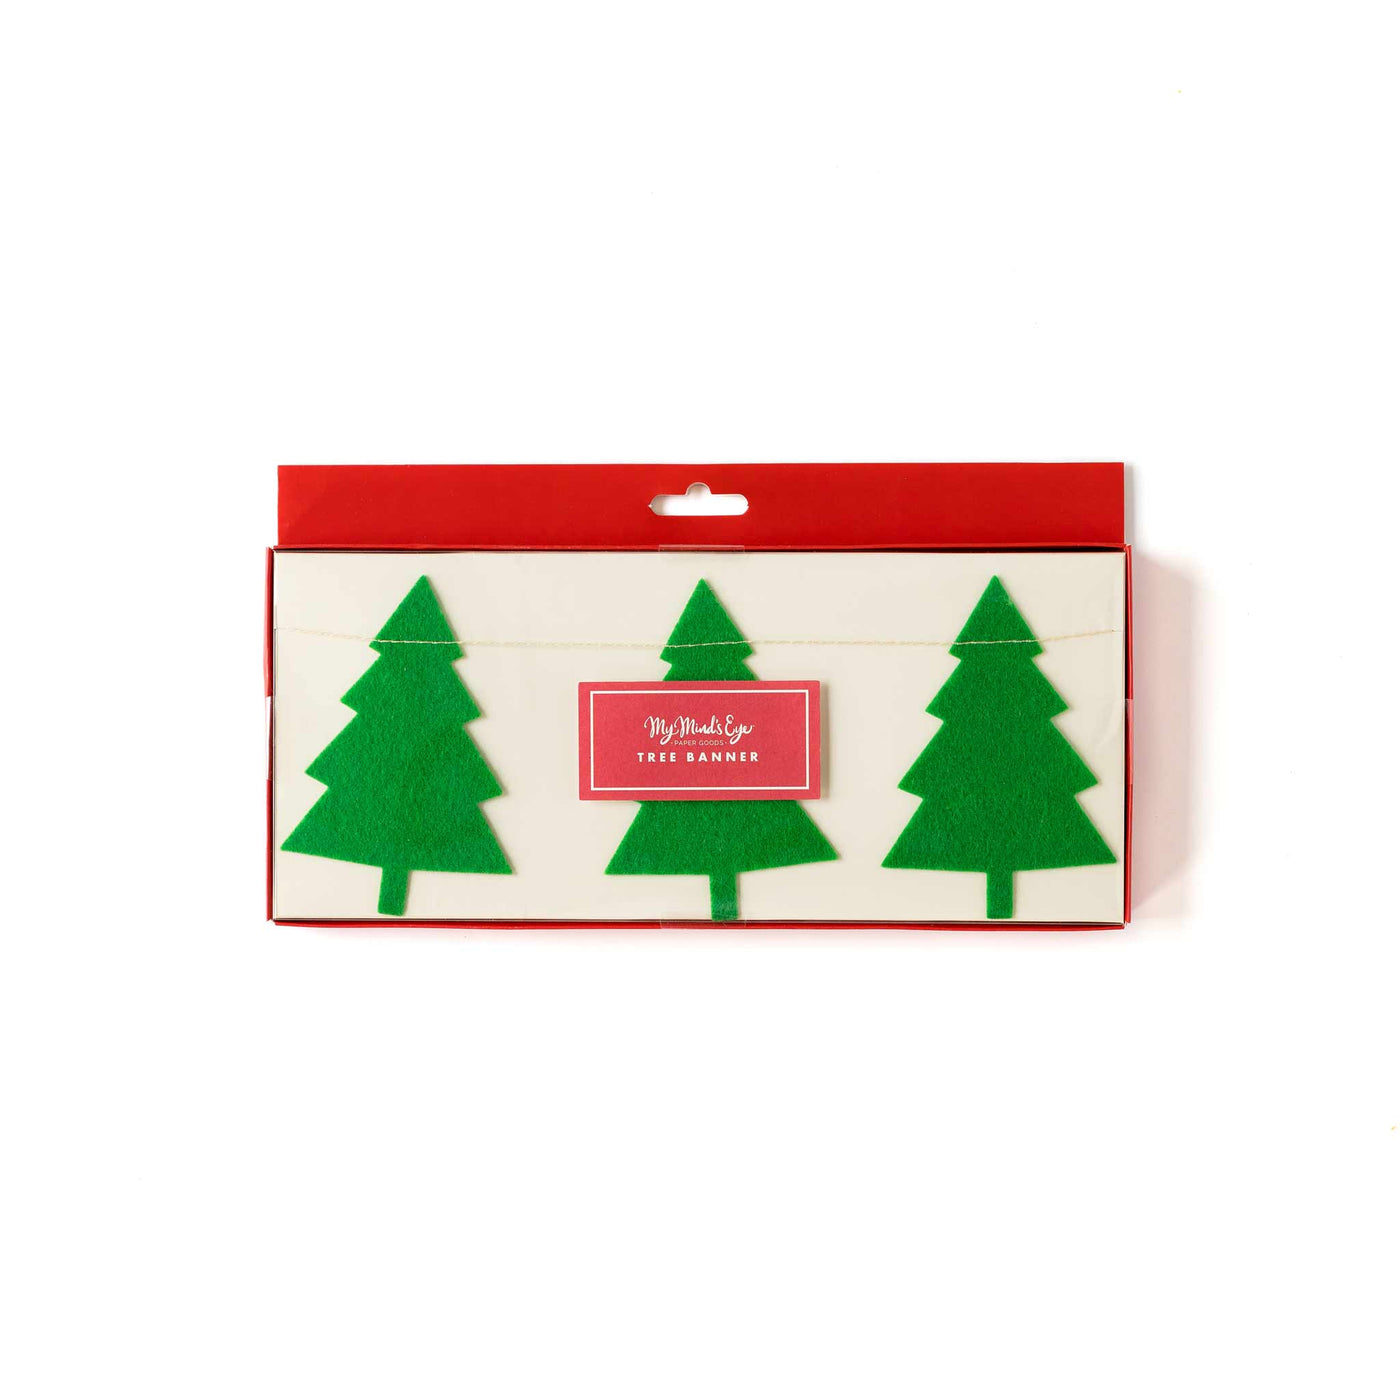 Felt Christmas Tree Banner - My Mind's Eye Paper Goods